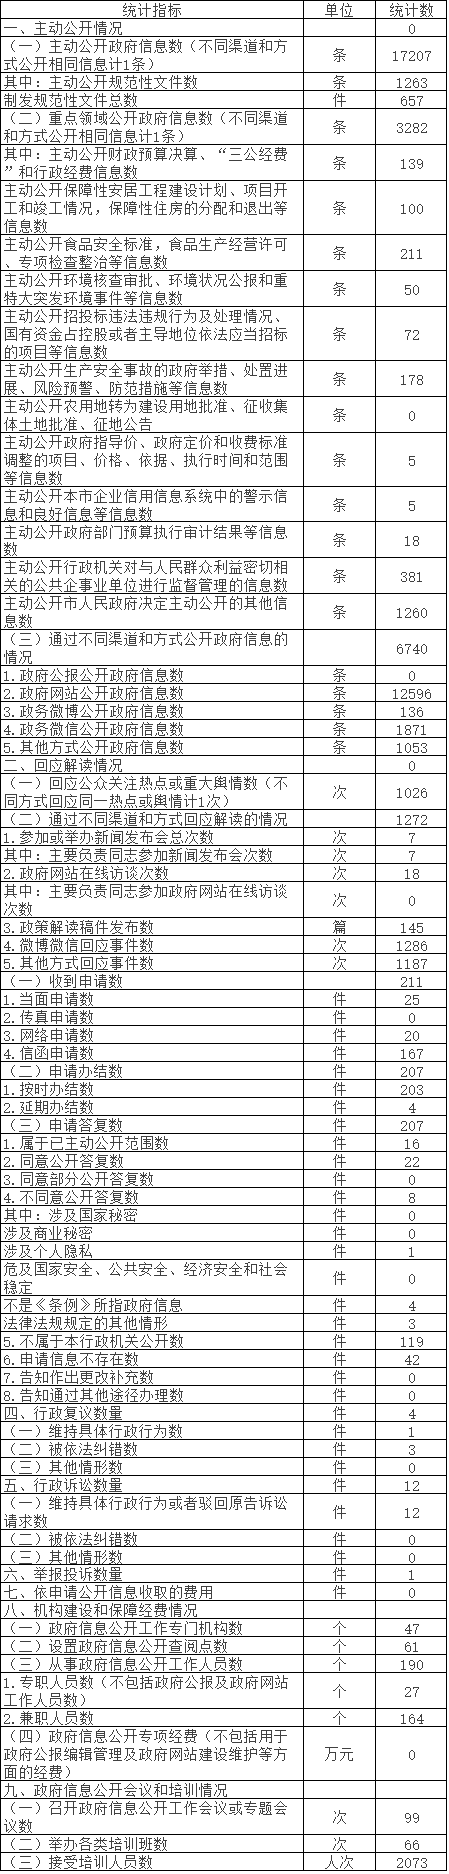 北京市延慶區人民政府政府信息公開情況統計表(2017年度)